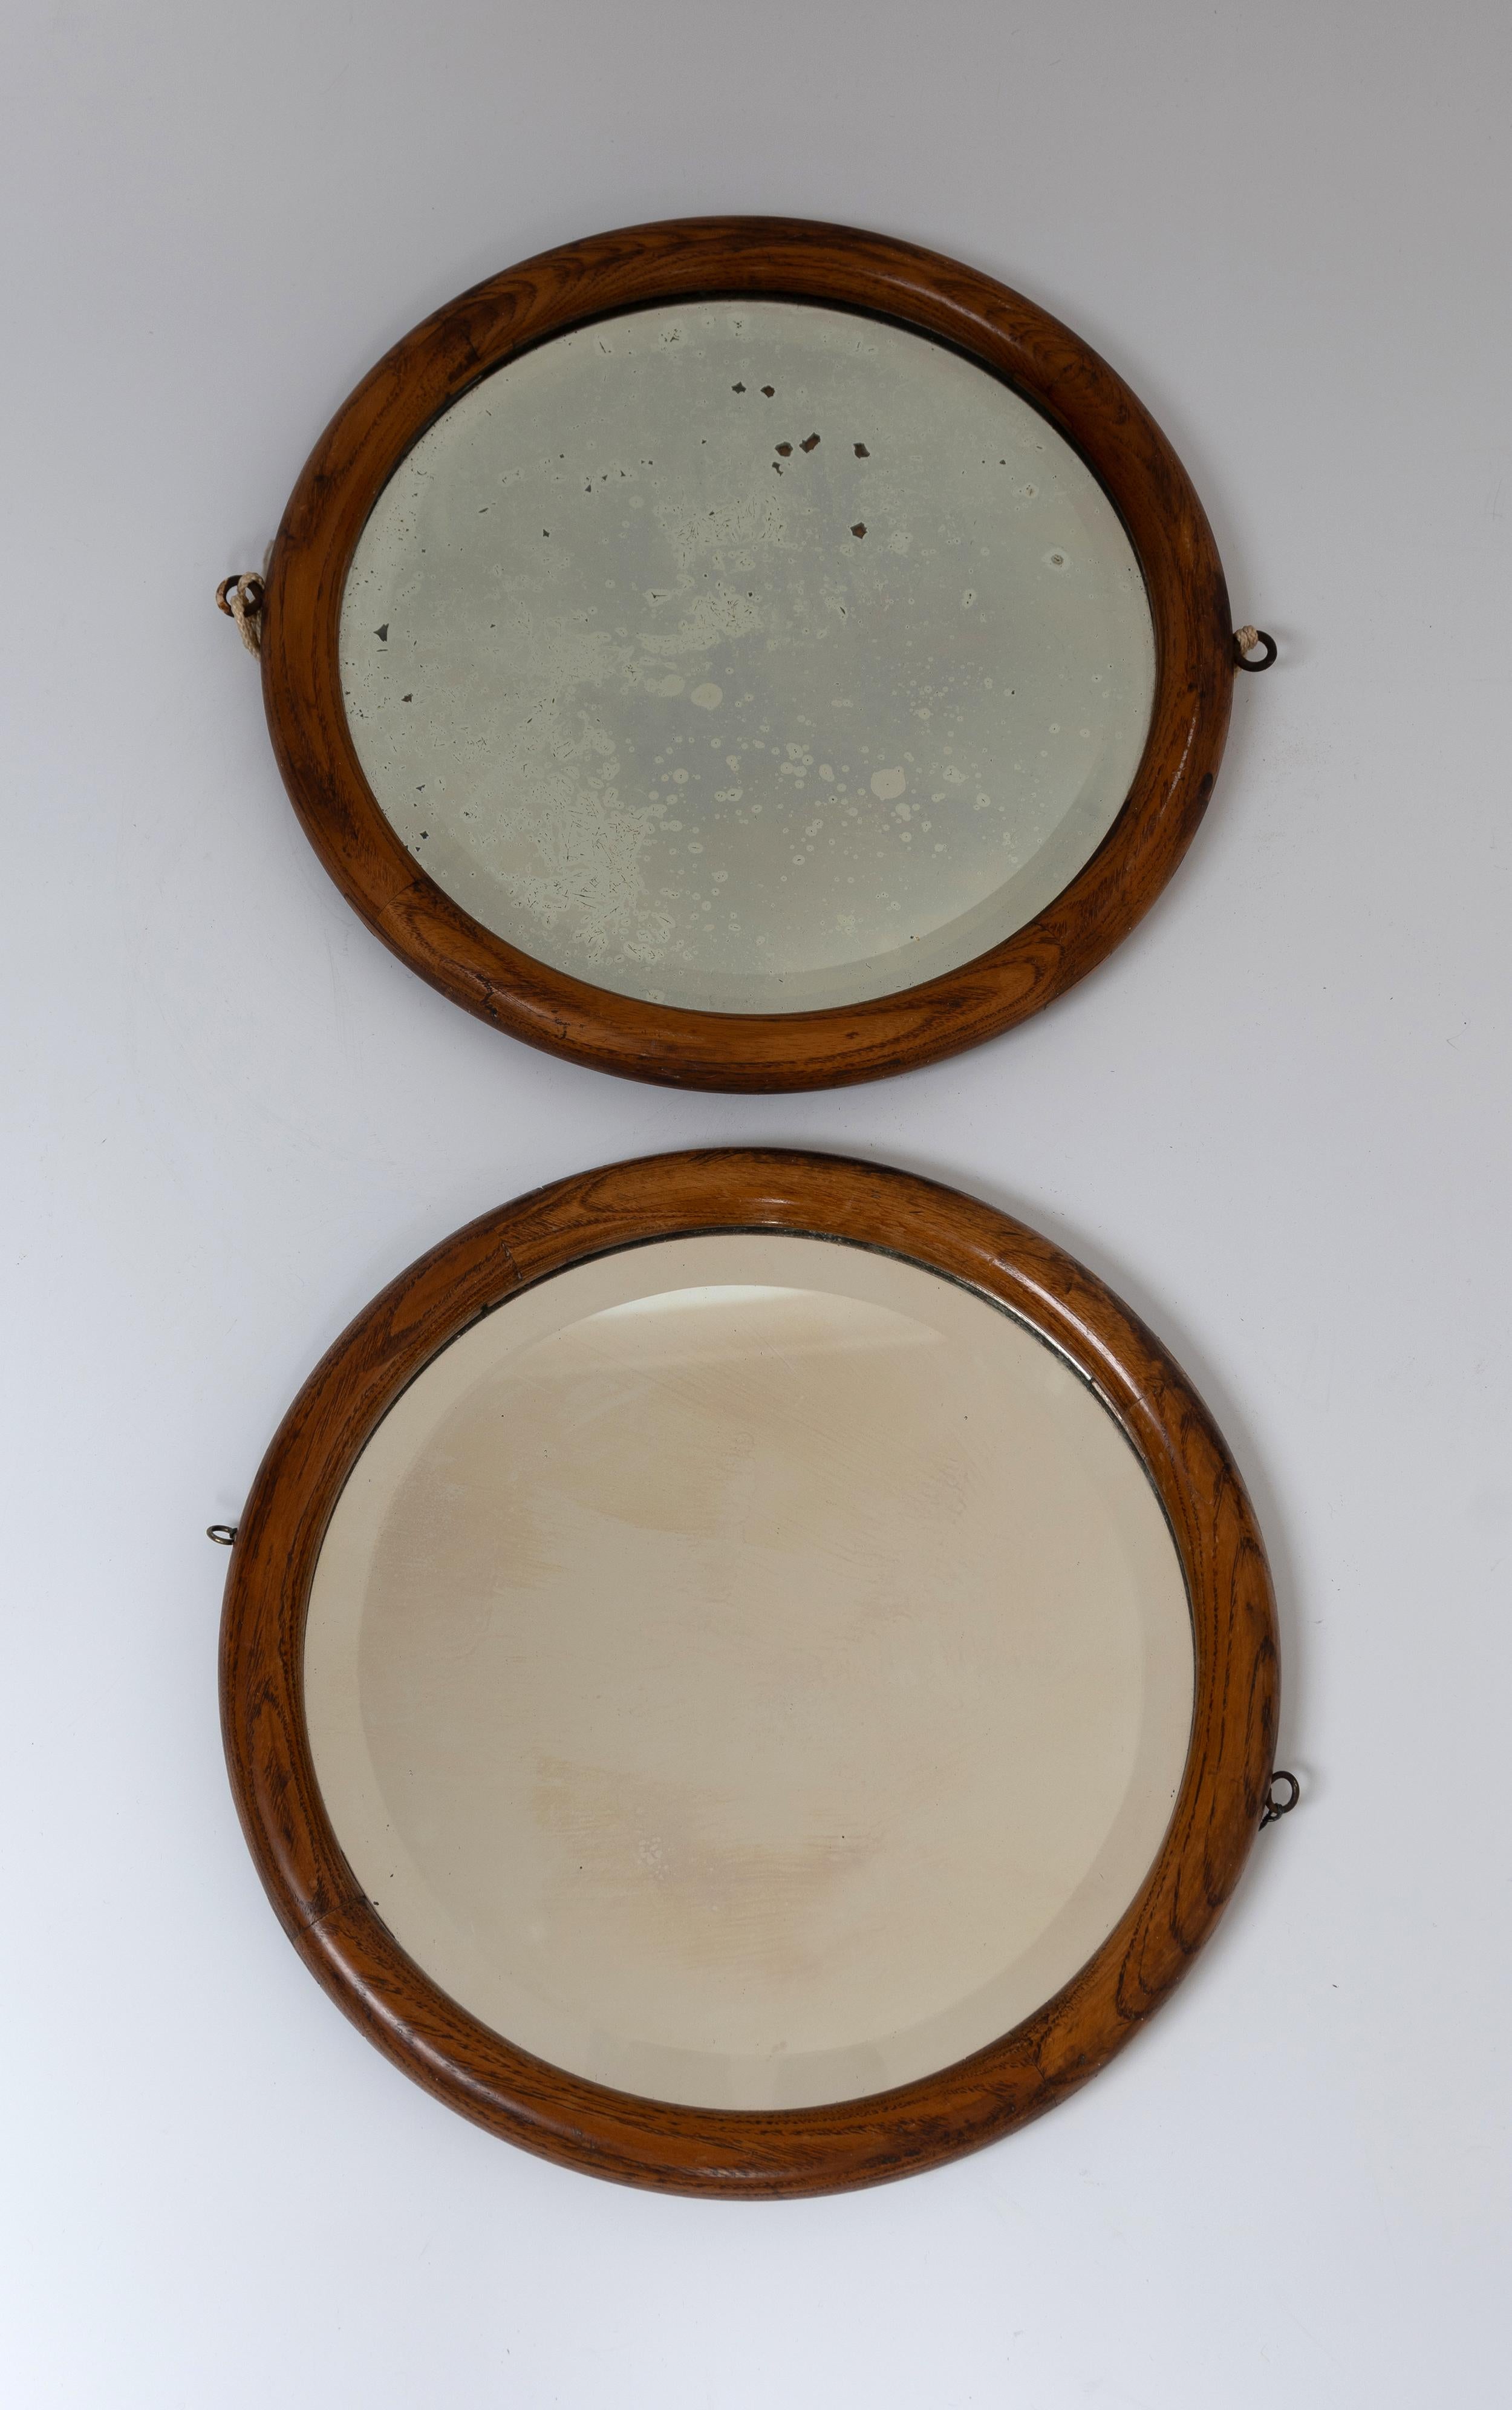 Paire de miroirs hublots ronds français anciens du 19ème siècle
Encadrement en noyer avec patine attrayante sur le miroir 
(Un miroir peut avoir été remplacé précédemment).
En bon état correspondant à l'âge, avec des signes de vieillissement (se